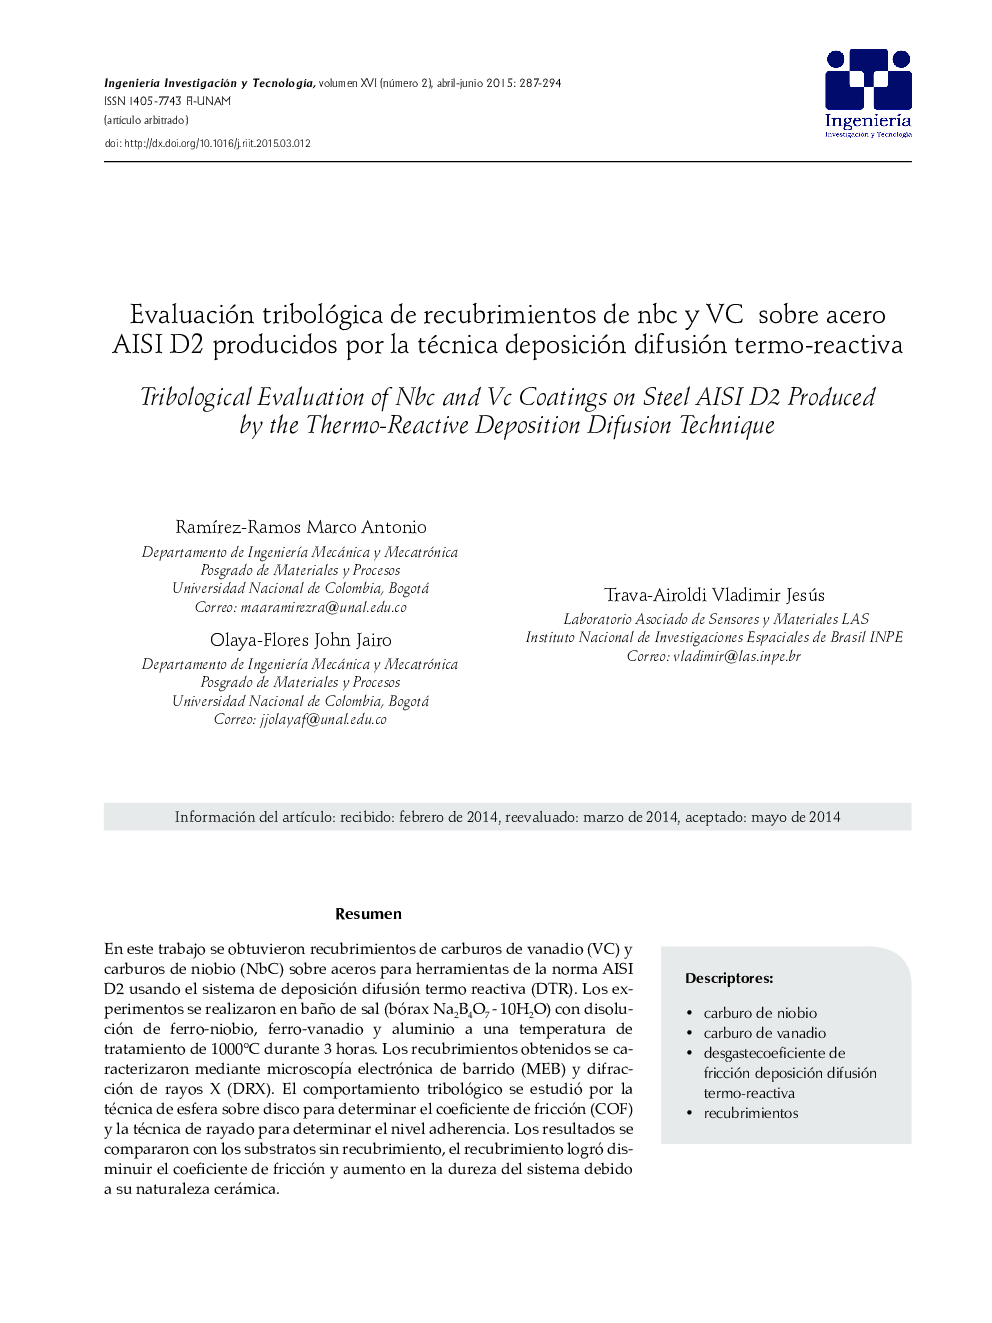 Evaluación tribológica de recubrimientos de nbc y VC sobre acero AISI D2 producidos por la técnica deposición difusión termo-reactiva